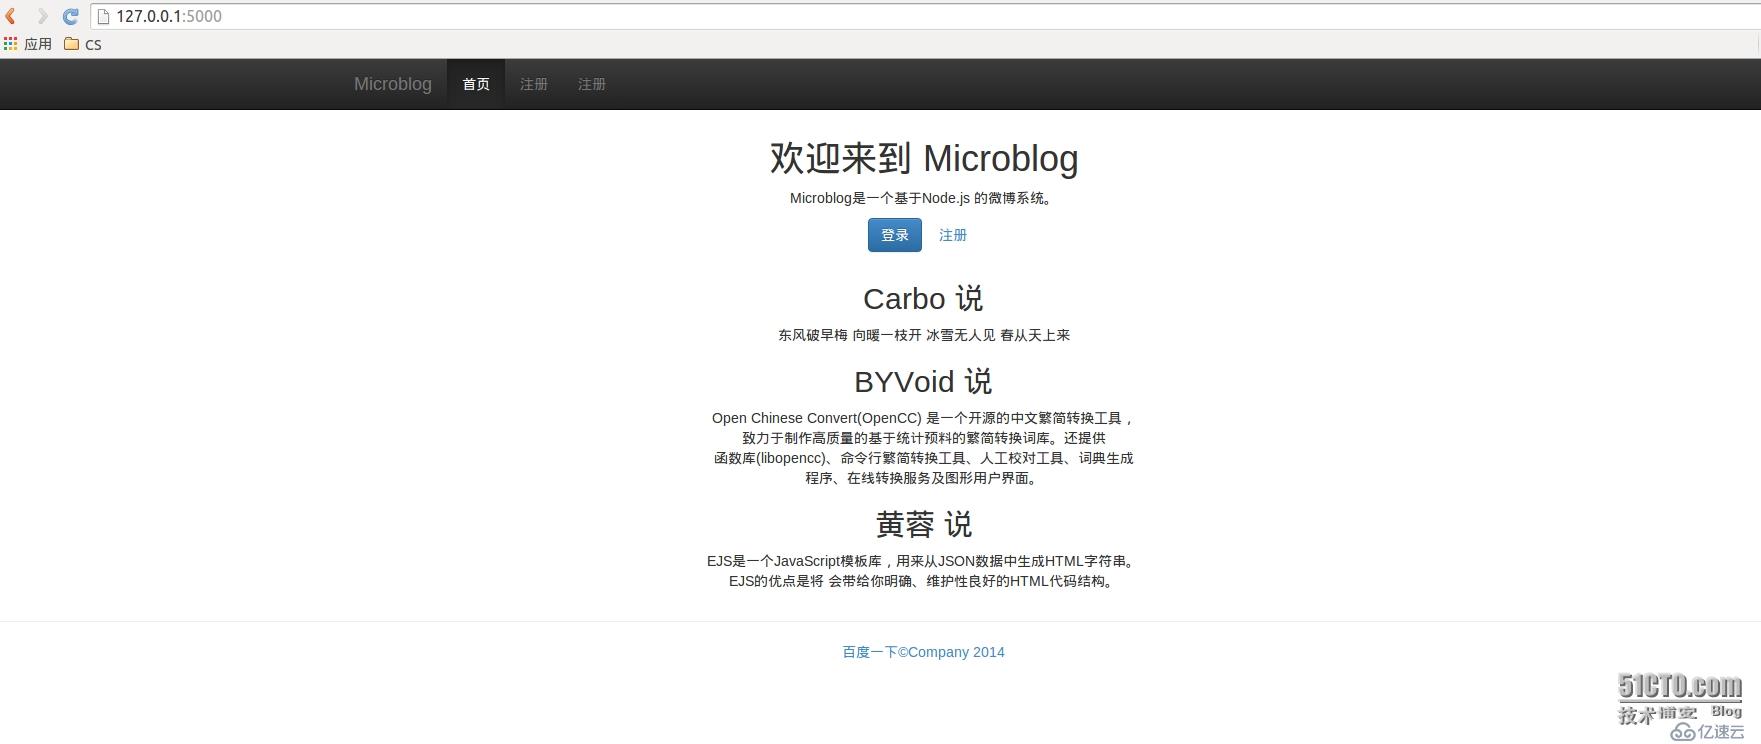 使用Nodejs创建基本的网站 Microblog--《Node.js开发指南》 1